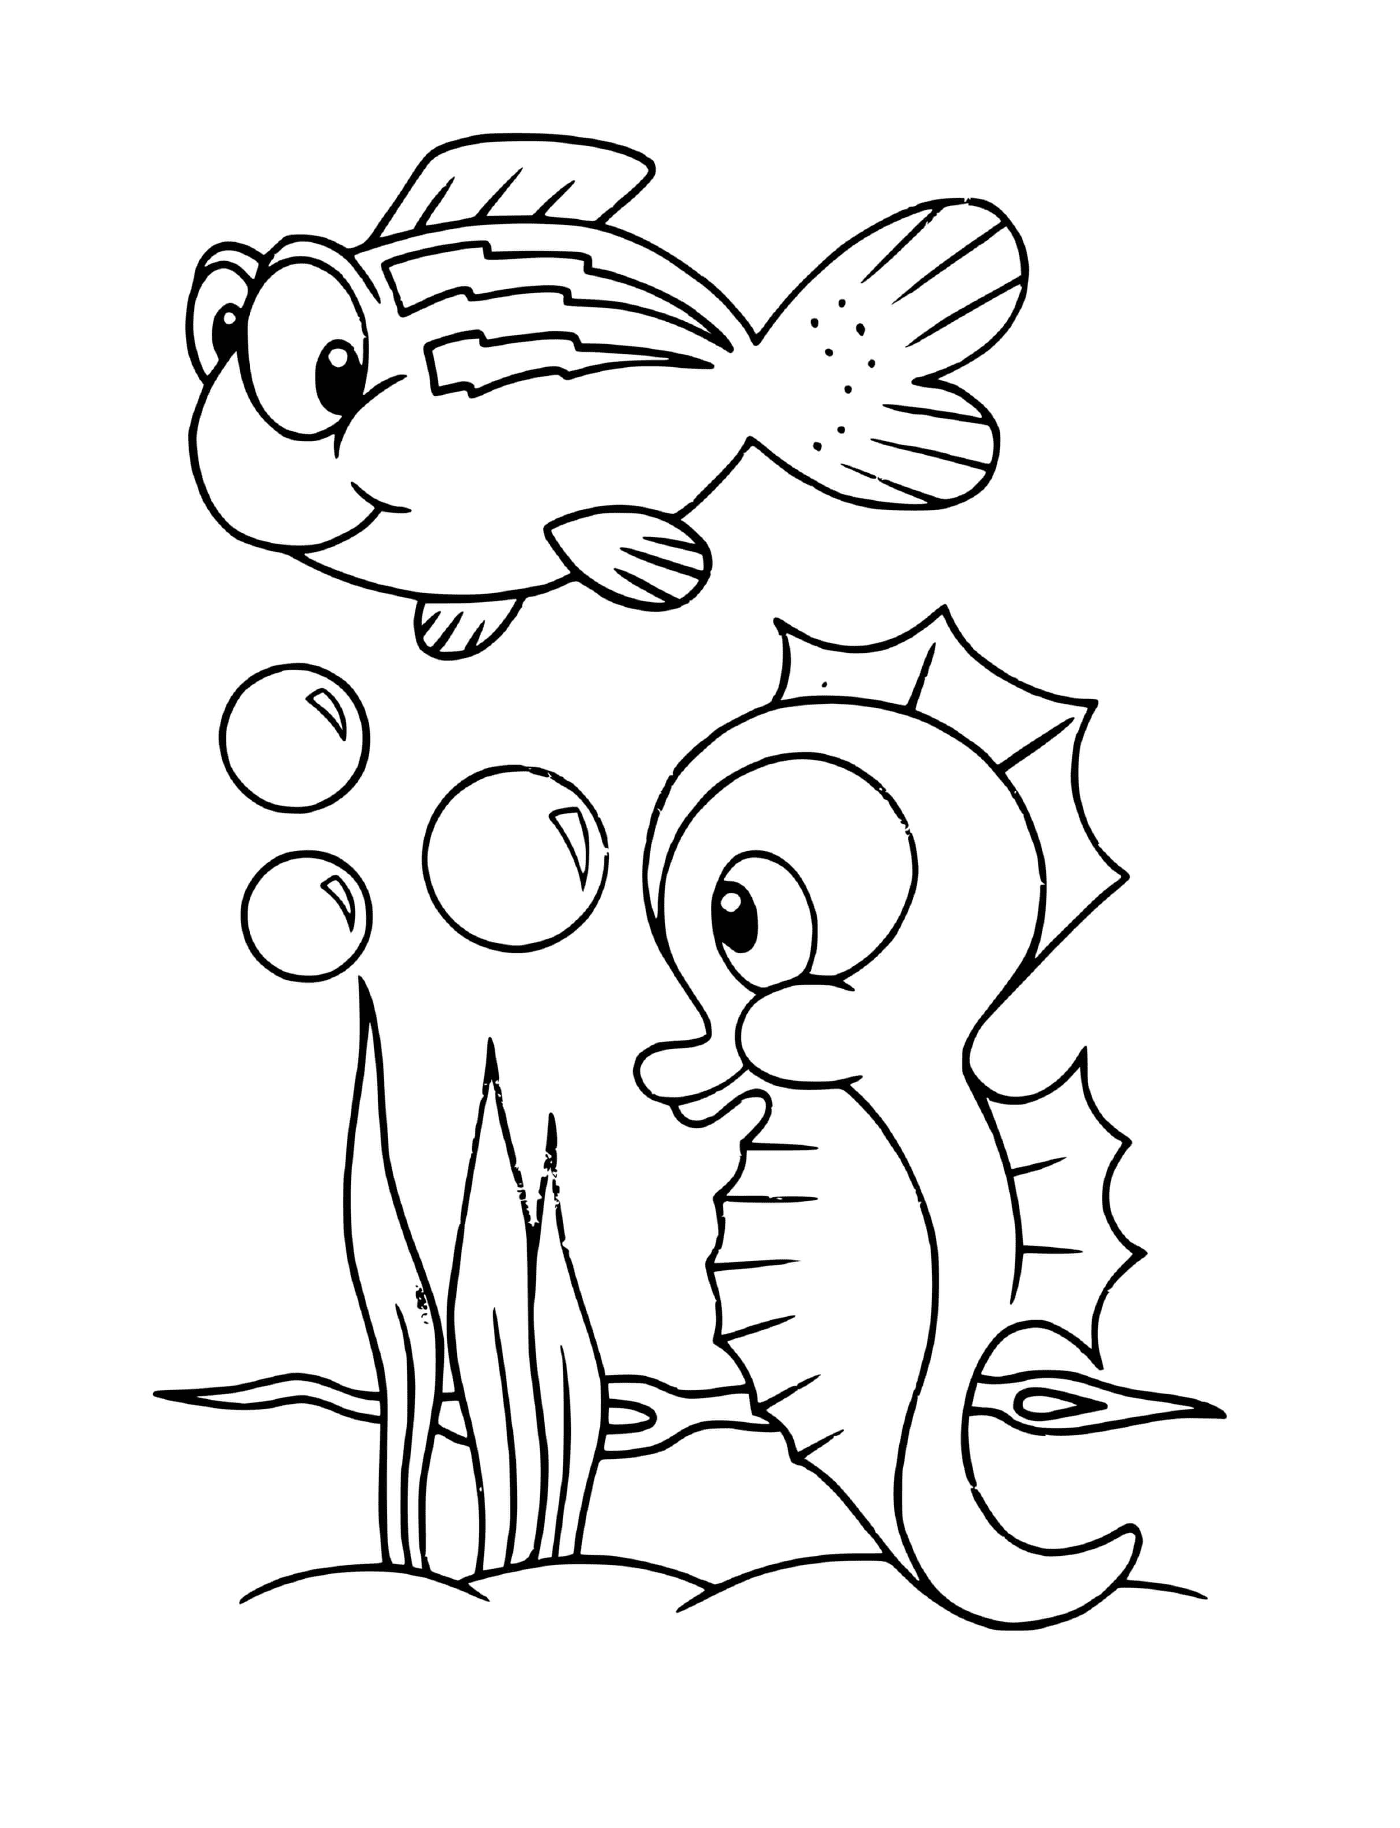  鱼和海马海龟 